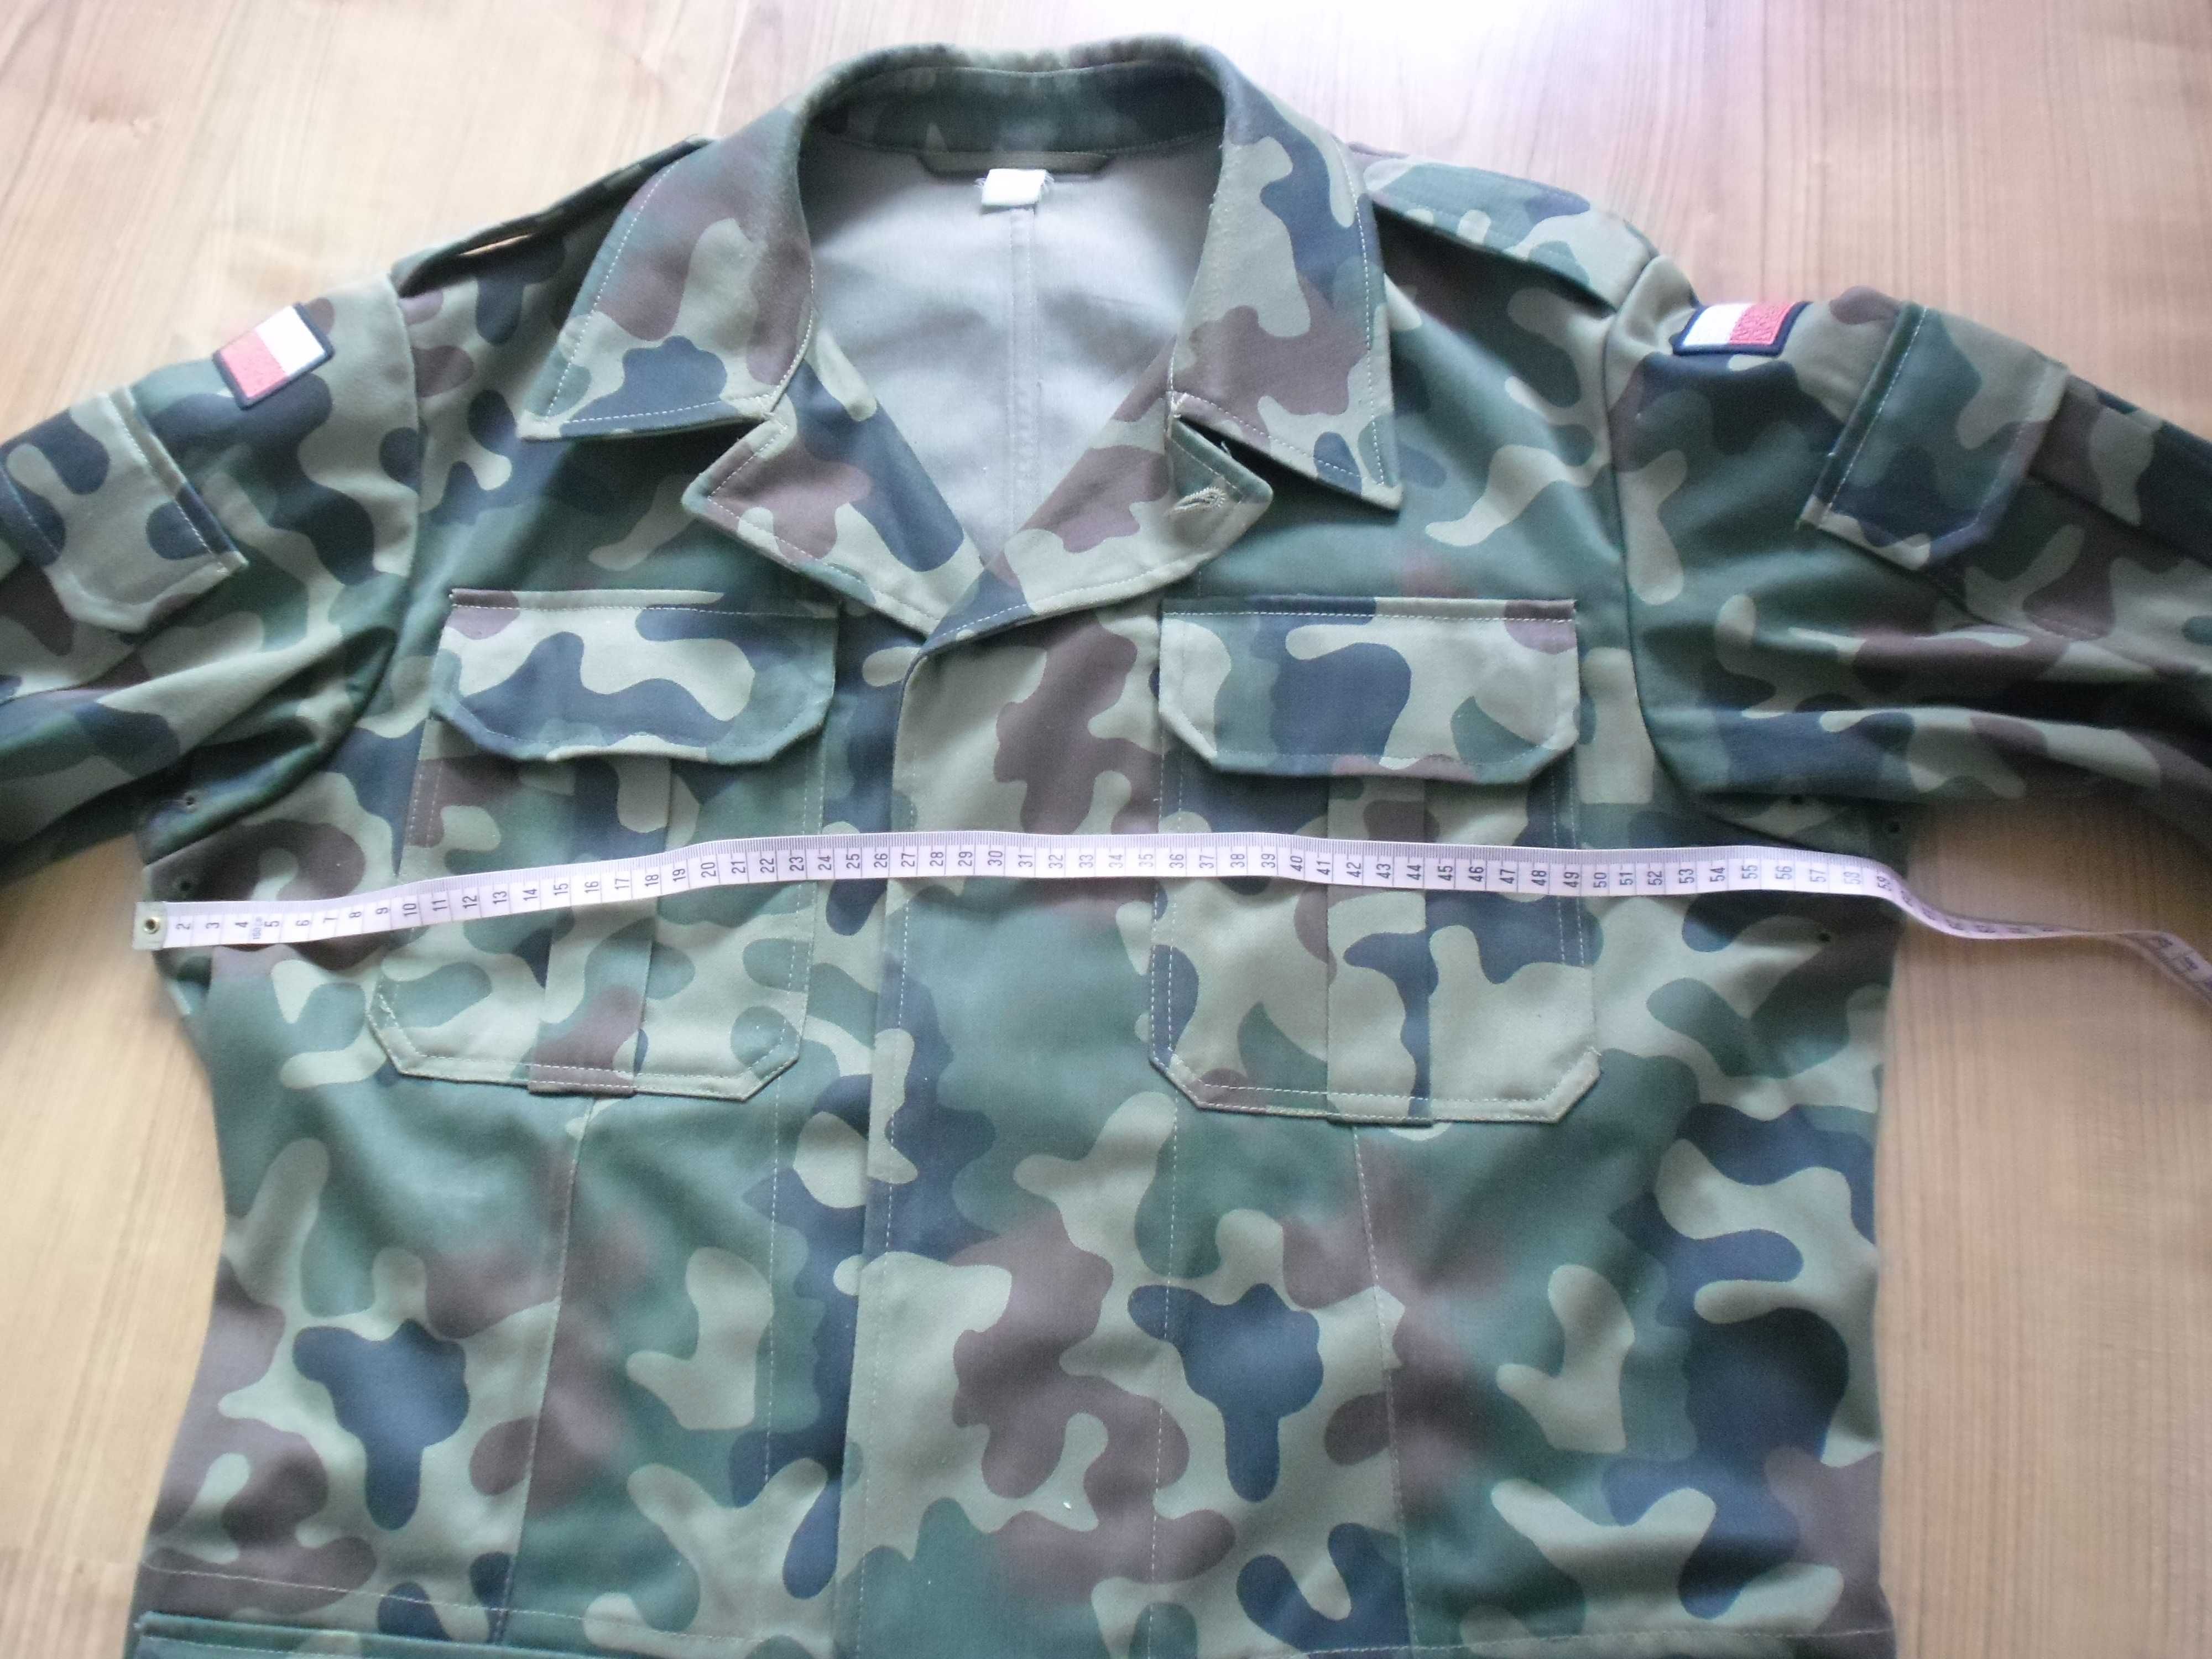 Wojskowa bluza bechatka MORO wzur 127 A / MON